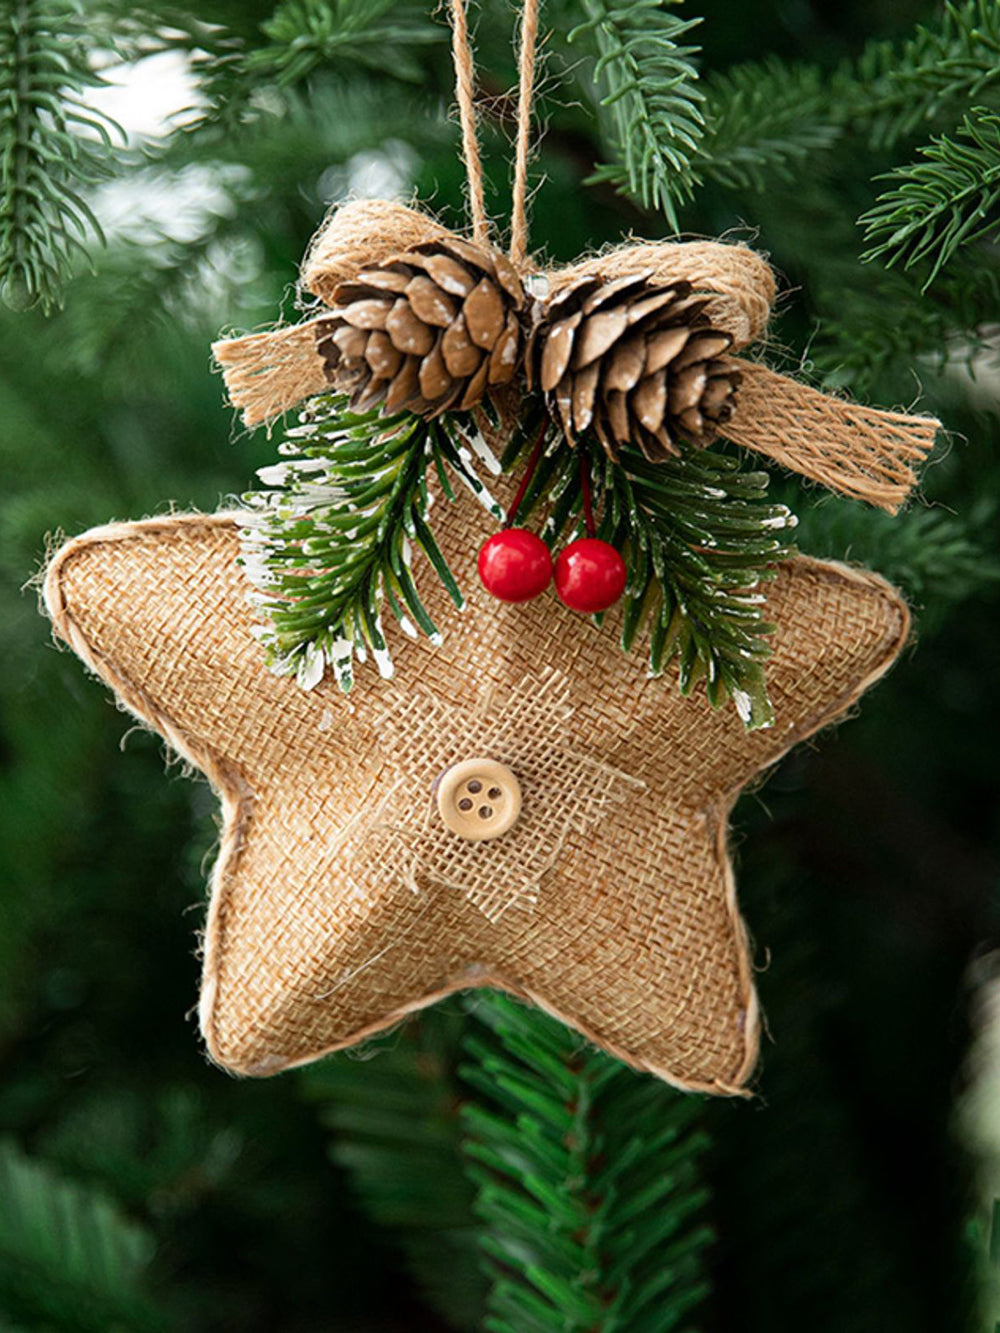 Pingente de decoração de pinha com estrela de cinco pontas para árvore de Natal